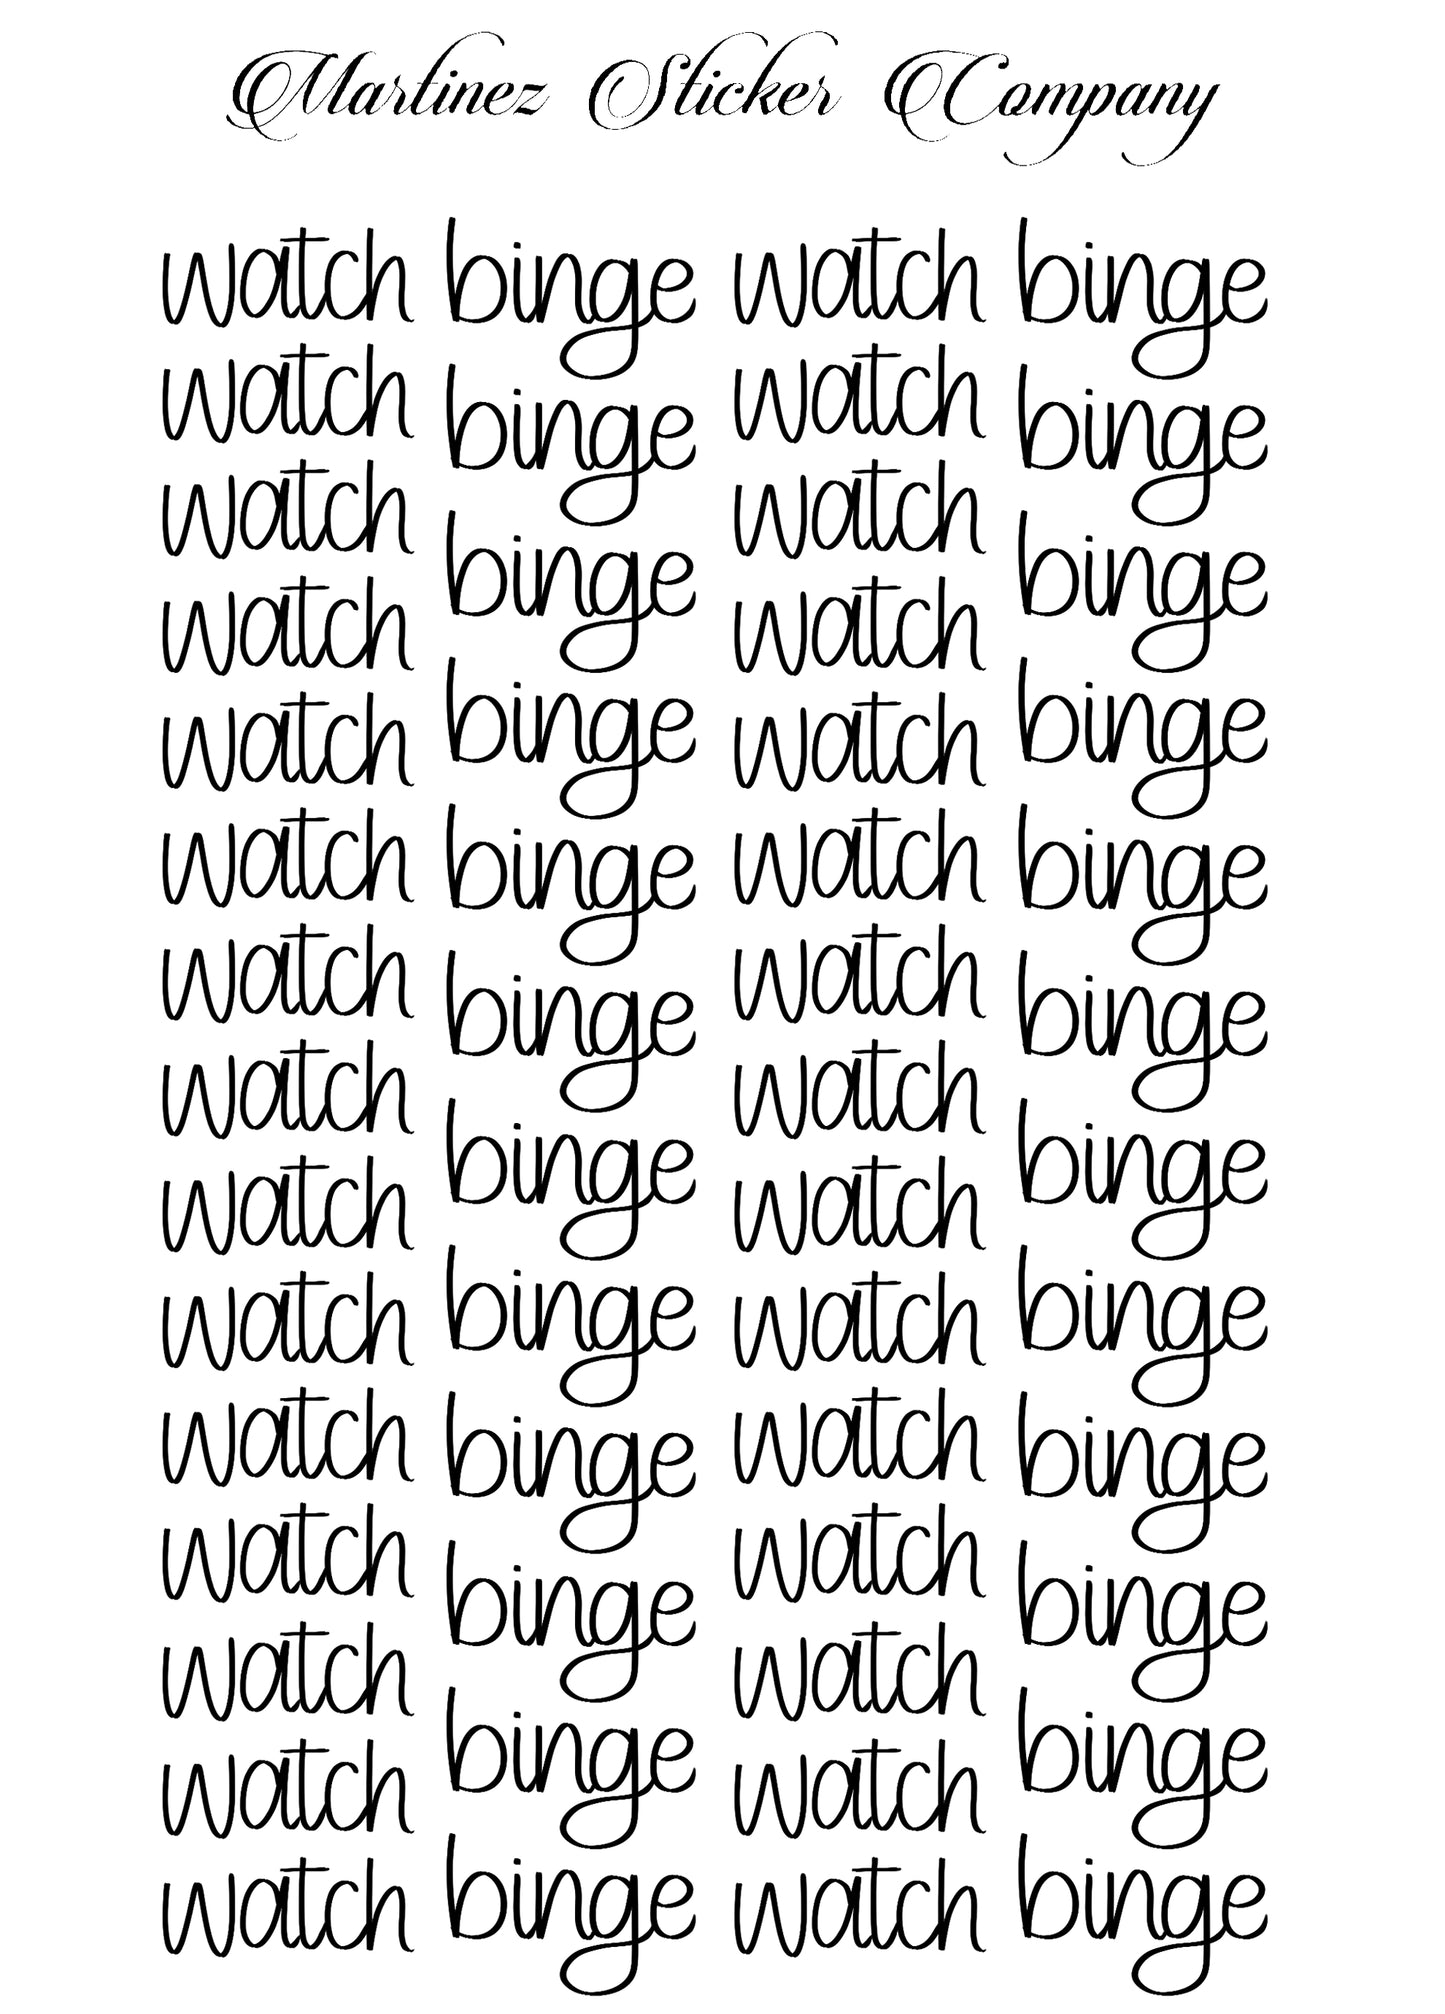 watch / binge